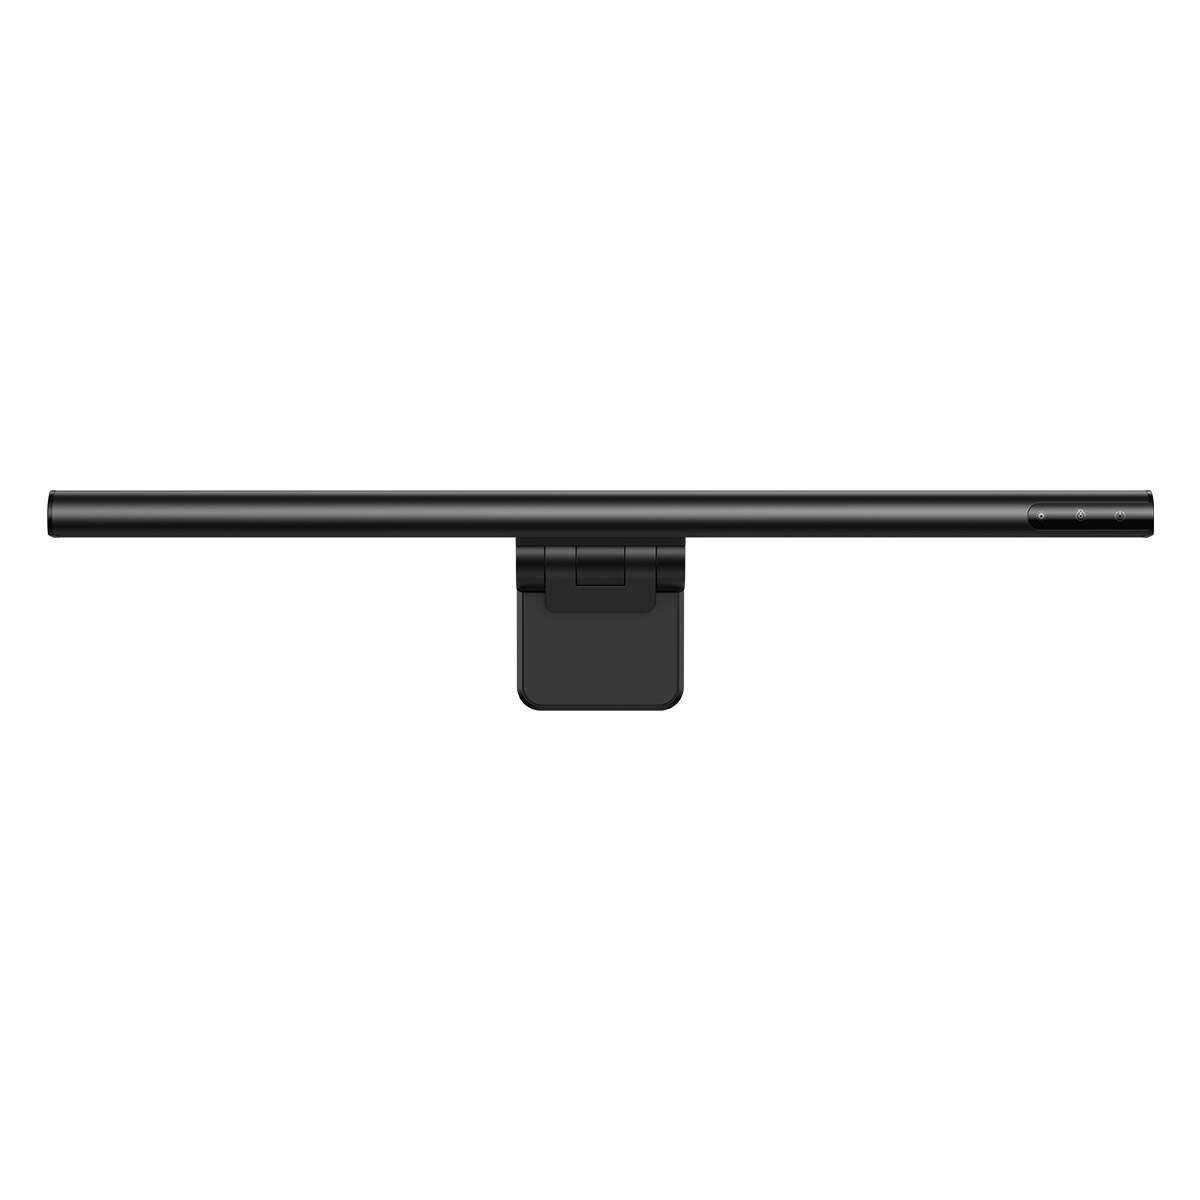 Kép 4/18 - Baseus otthon, i-wok series USB Fokozatmentesen sötétedő monitorra szerelhető függő lámpa 5W (Youth) 2800K/4000K/5500K, fekete (DGIWK-B01)